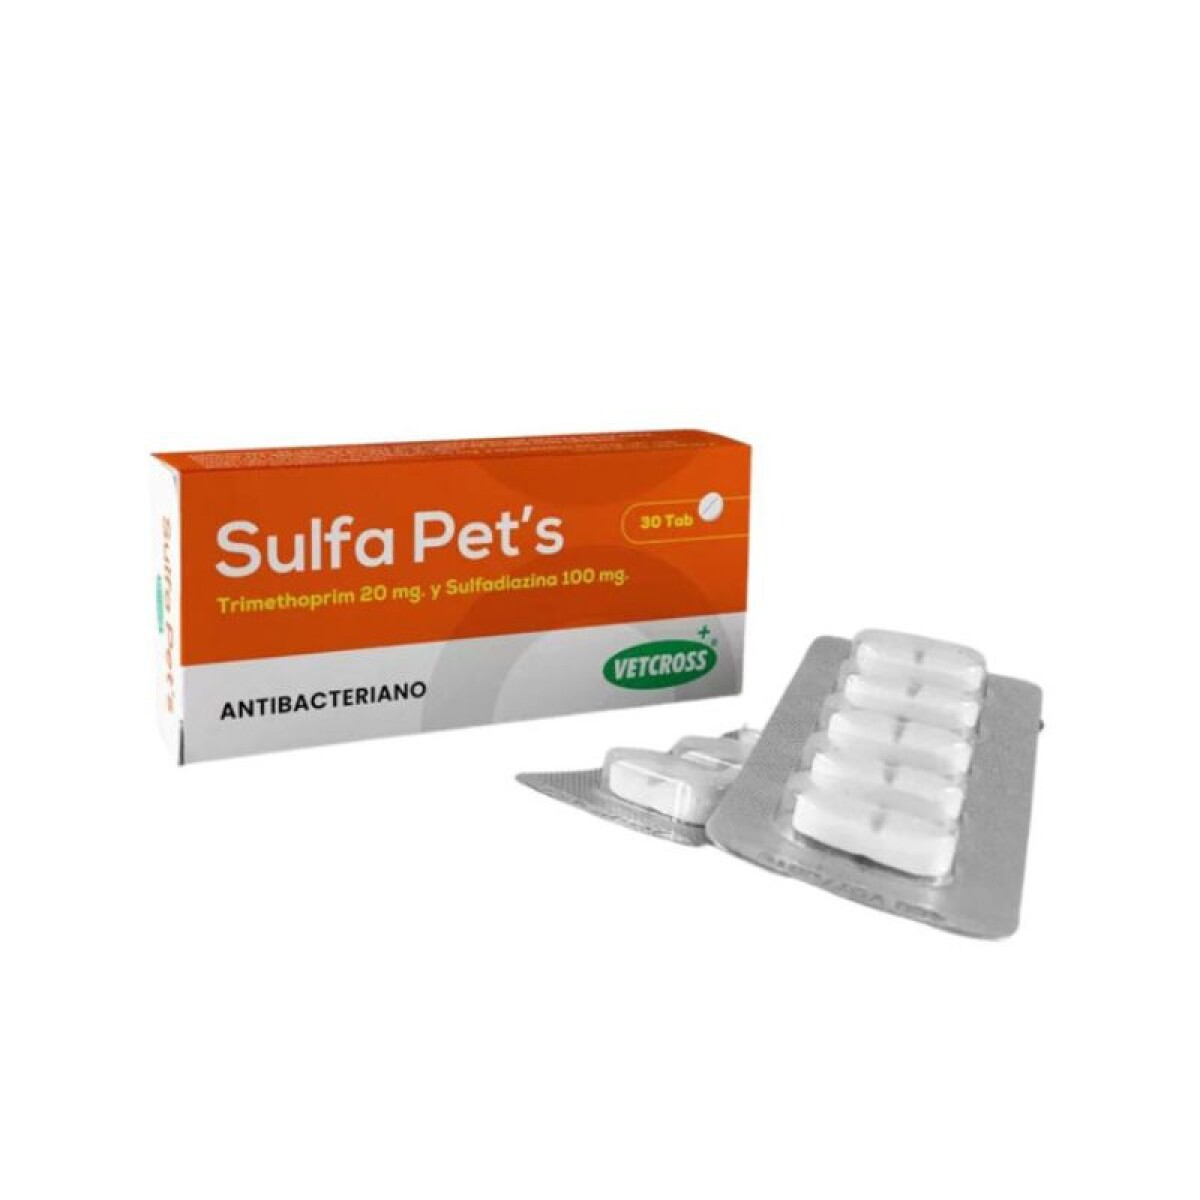 SULFA PETS 30 TABLETAS - Sulfa Pets 30 Tabletas 